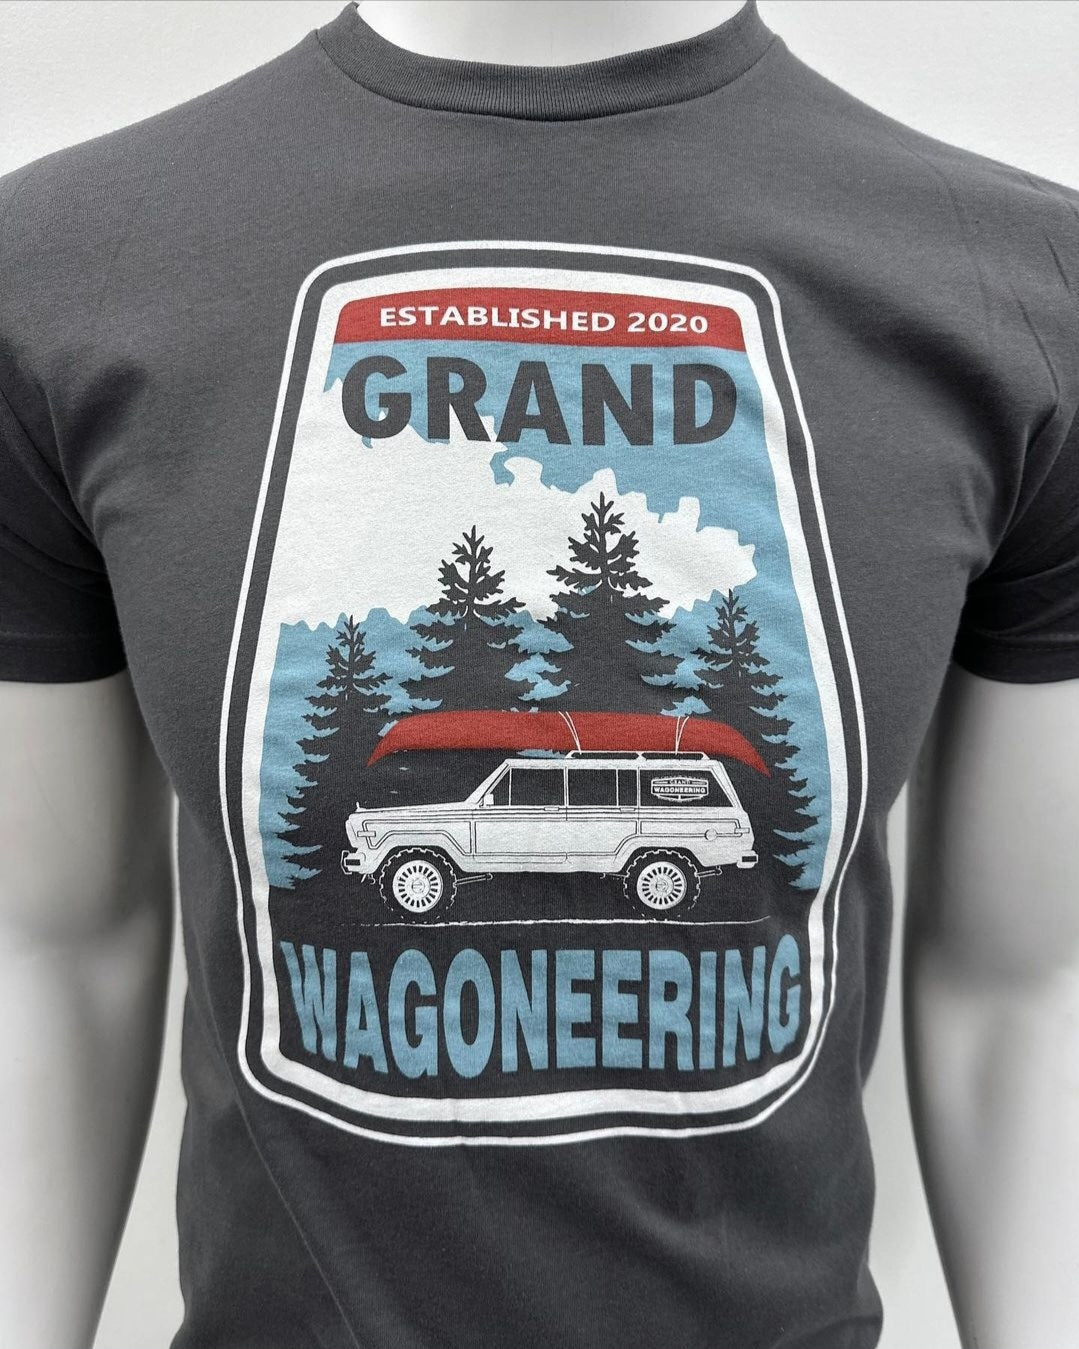 Grand Wagoneering Grand Wagoneer Adventure shirt